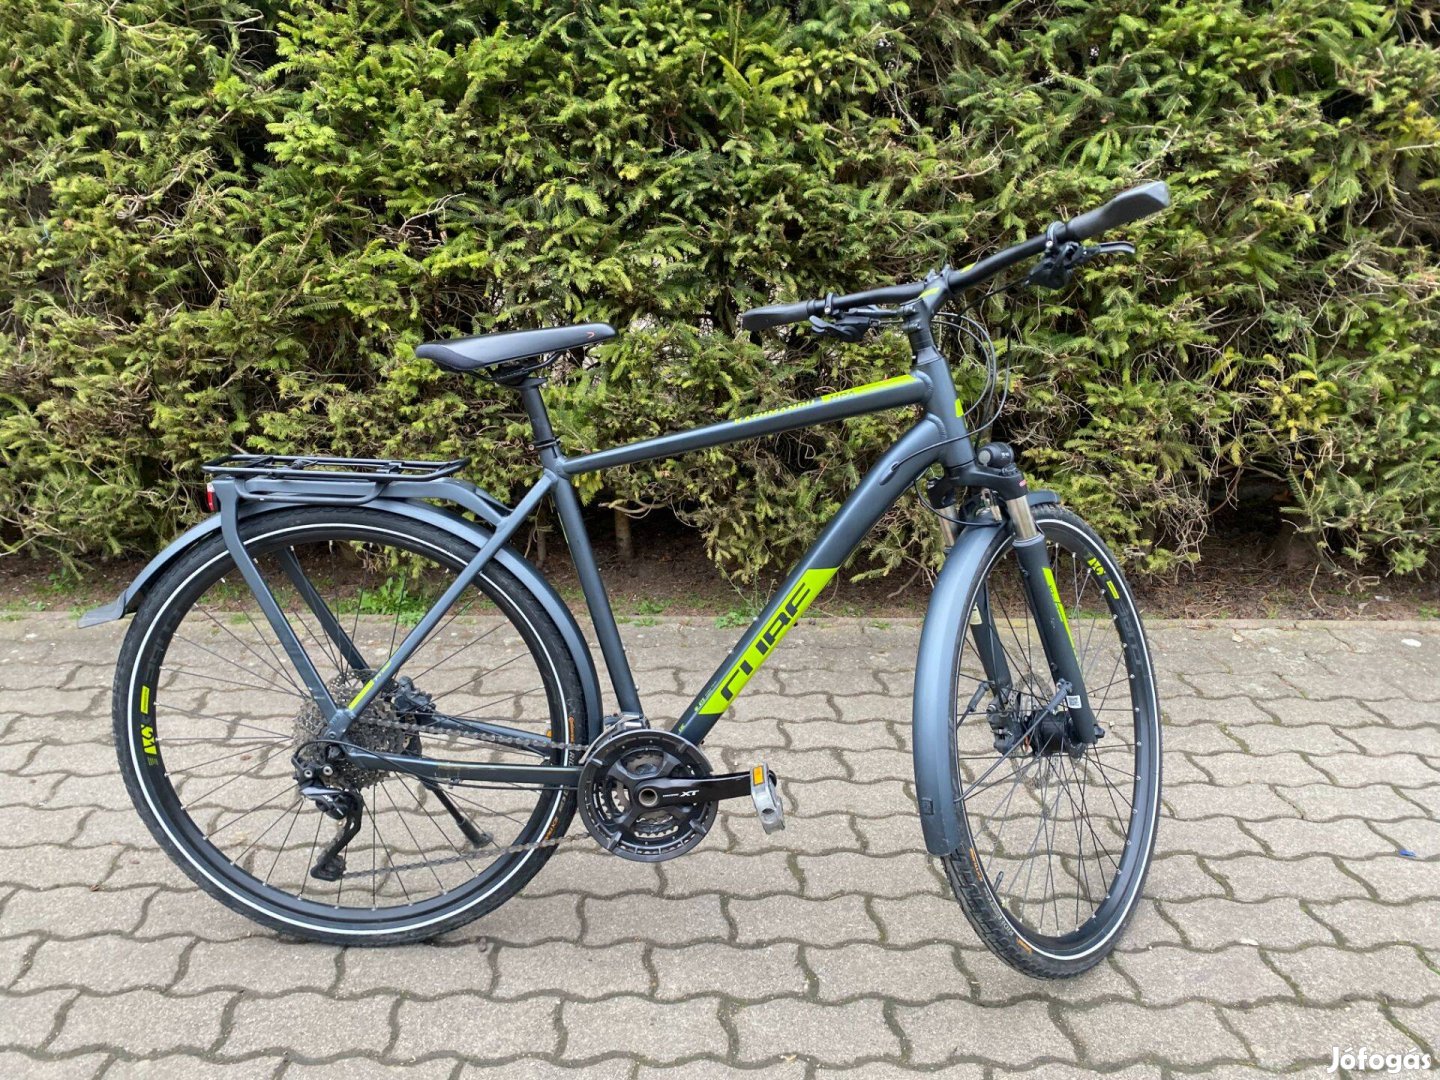 Eladó Cube Kathmandu EXC 2018-as kerékpár, bicikli